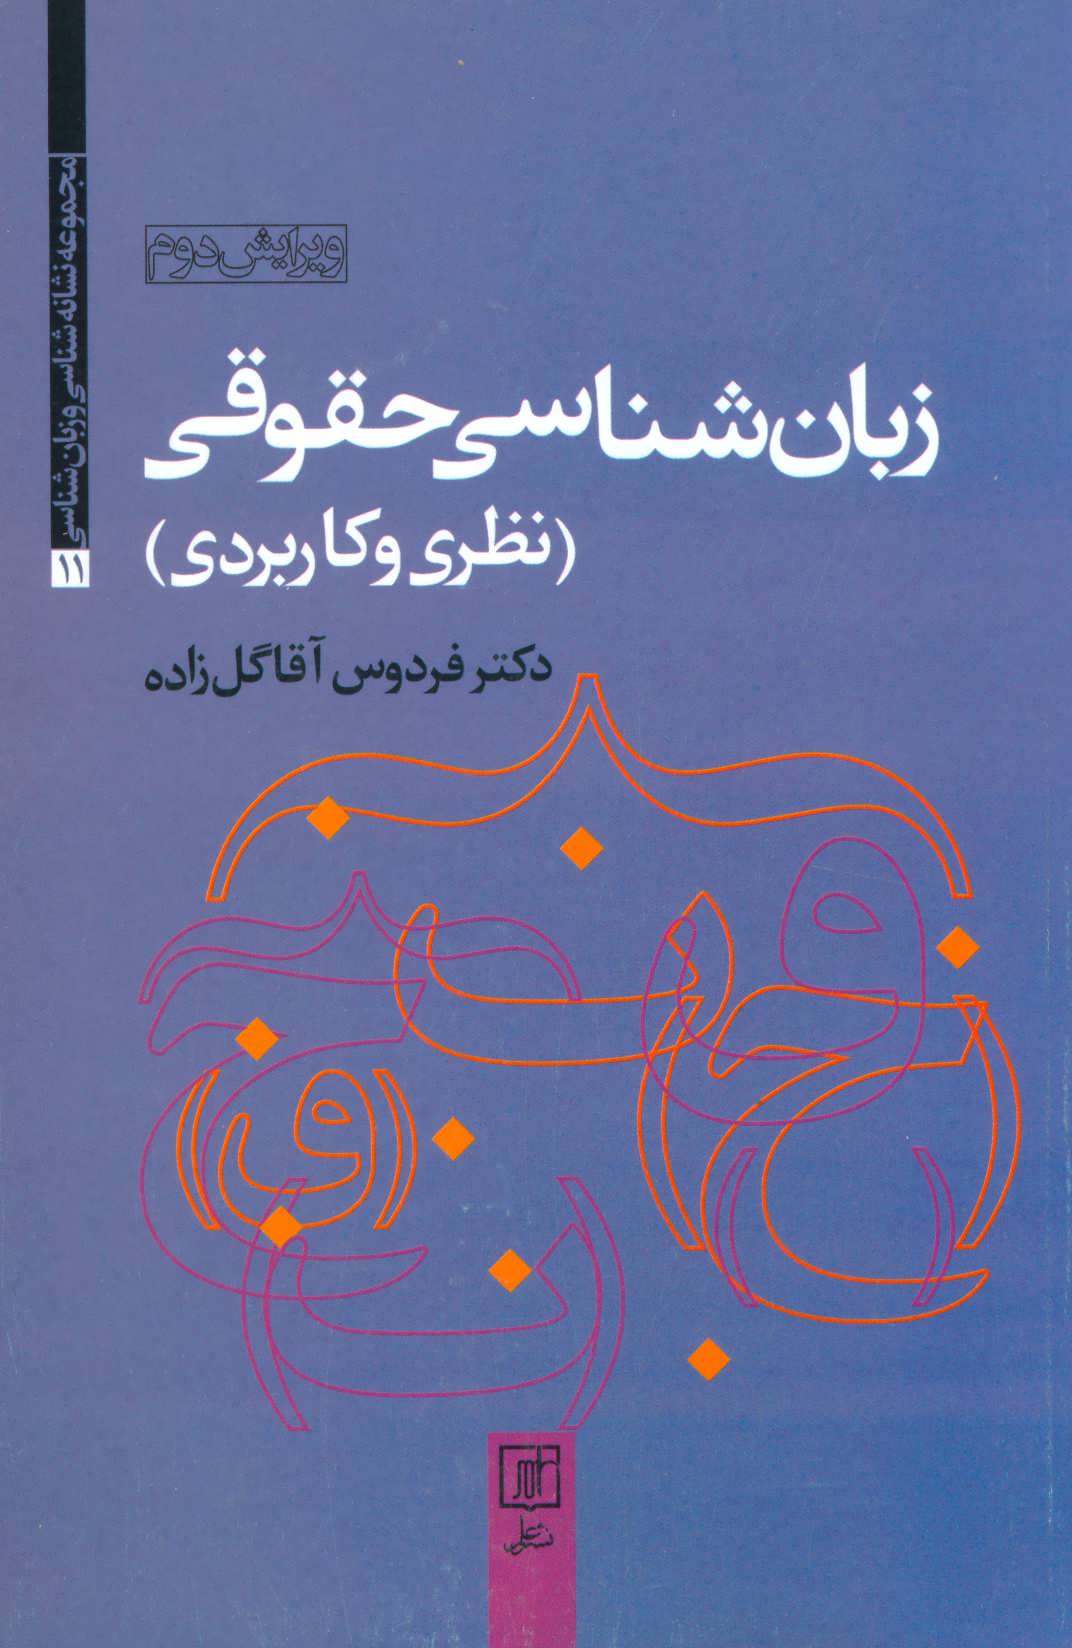 کتاب زبان شناسی حقوقی (نظری و کاربردی)،(مجموعه نشانه شناسی و زبان شناسی11)